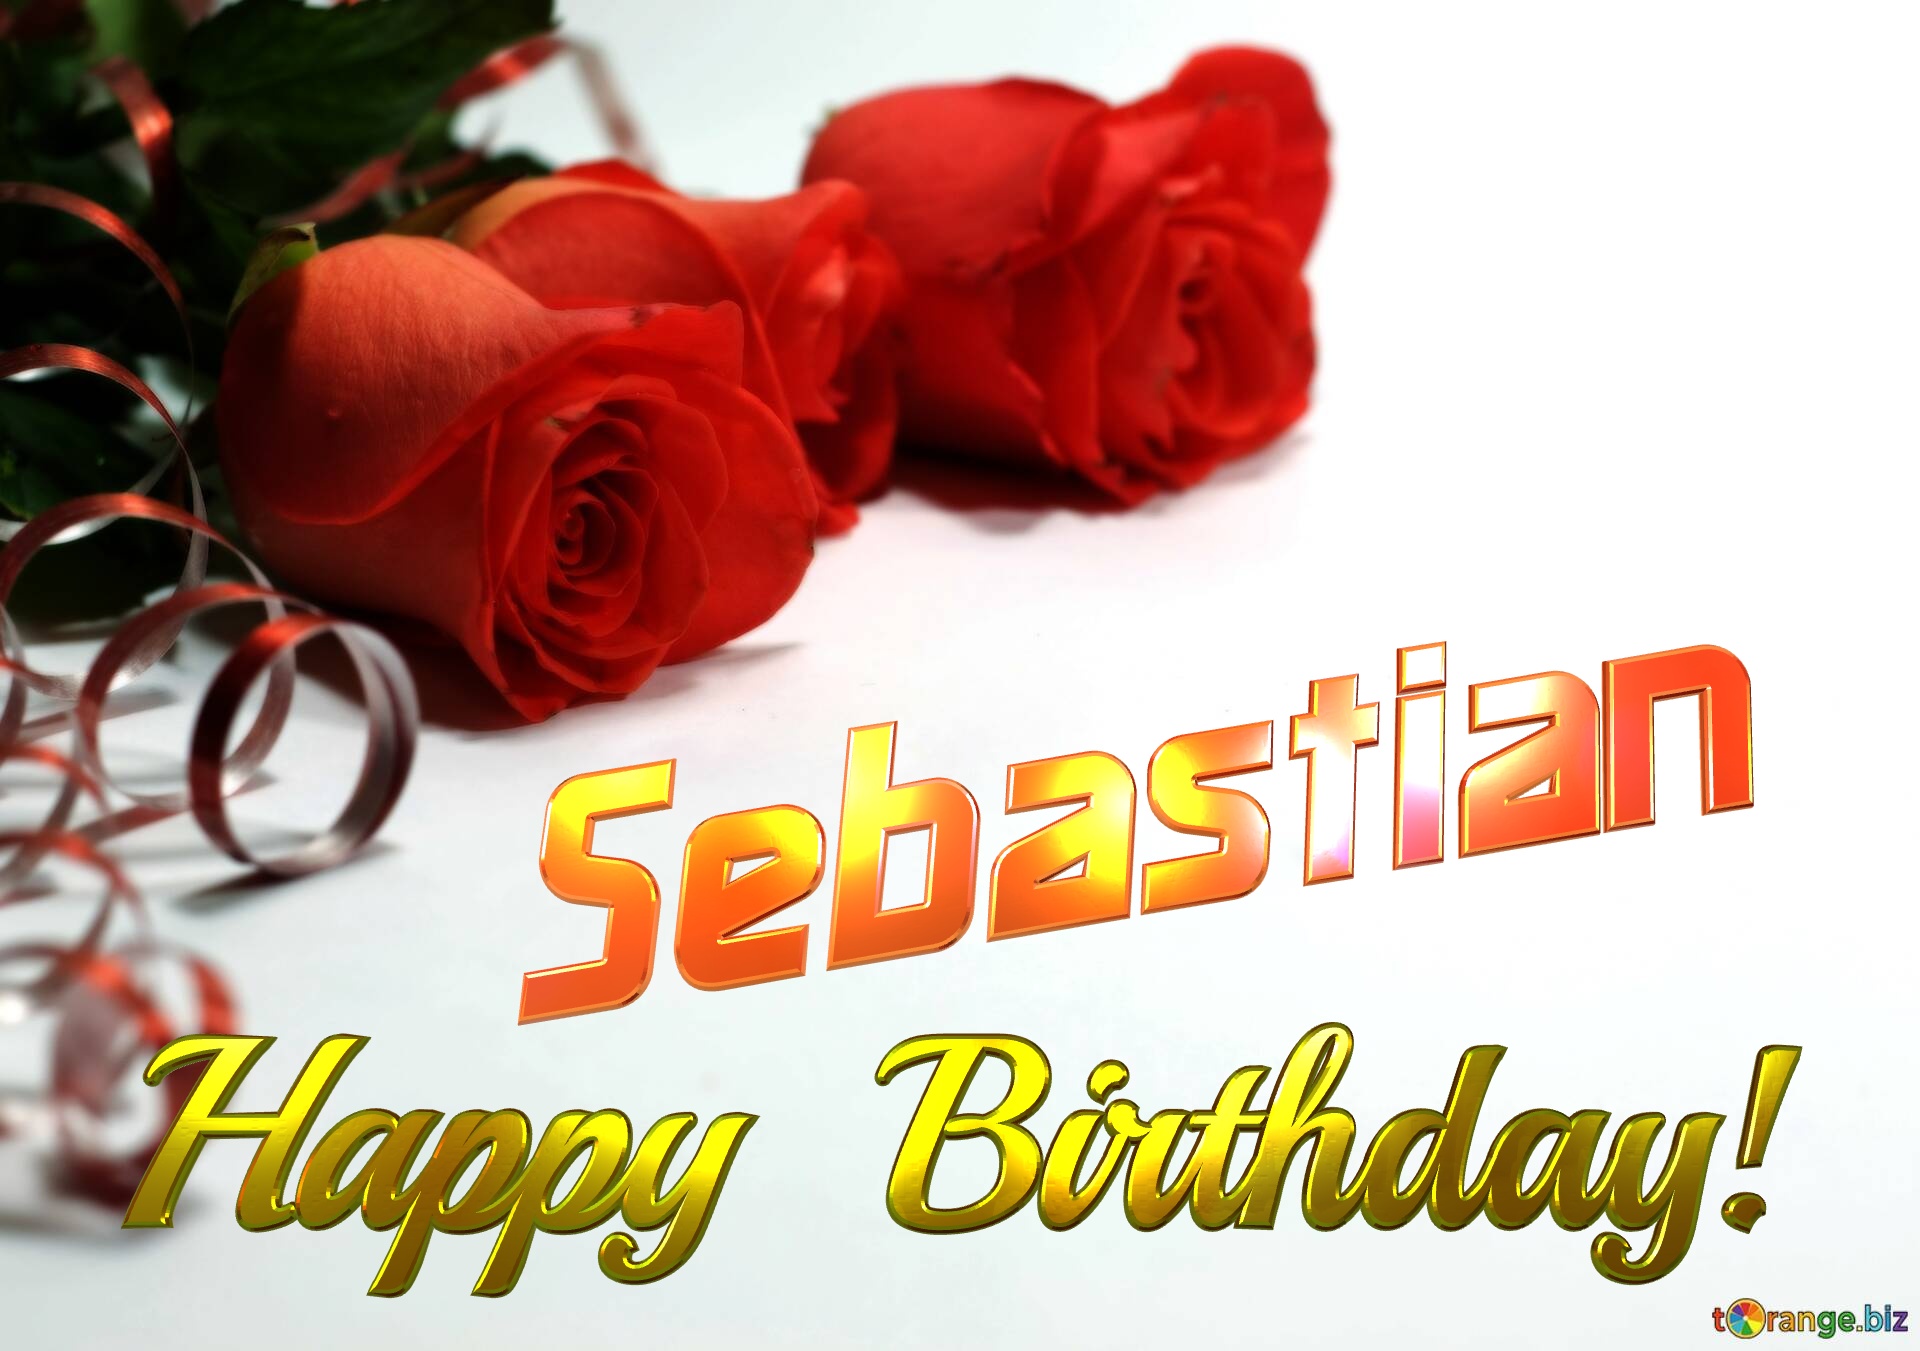 Sebastian   Birthday   Wishes background №0